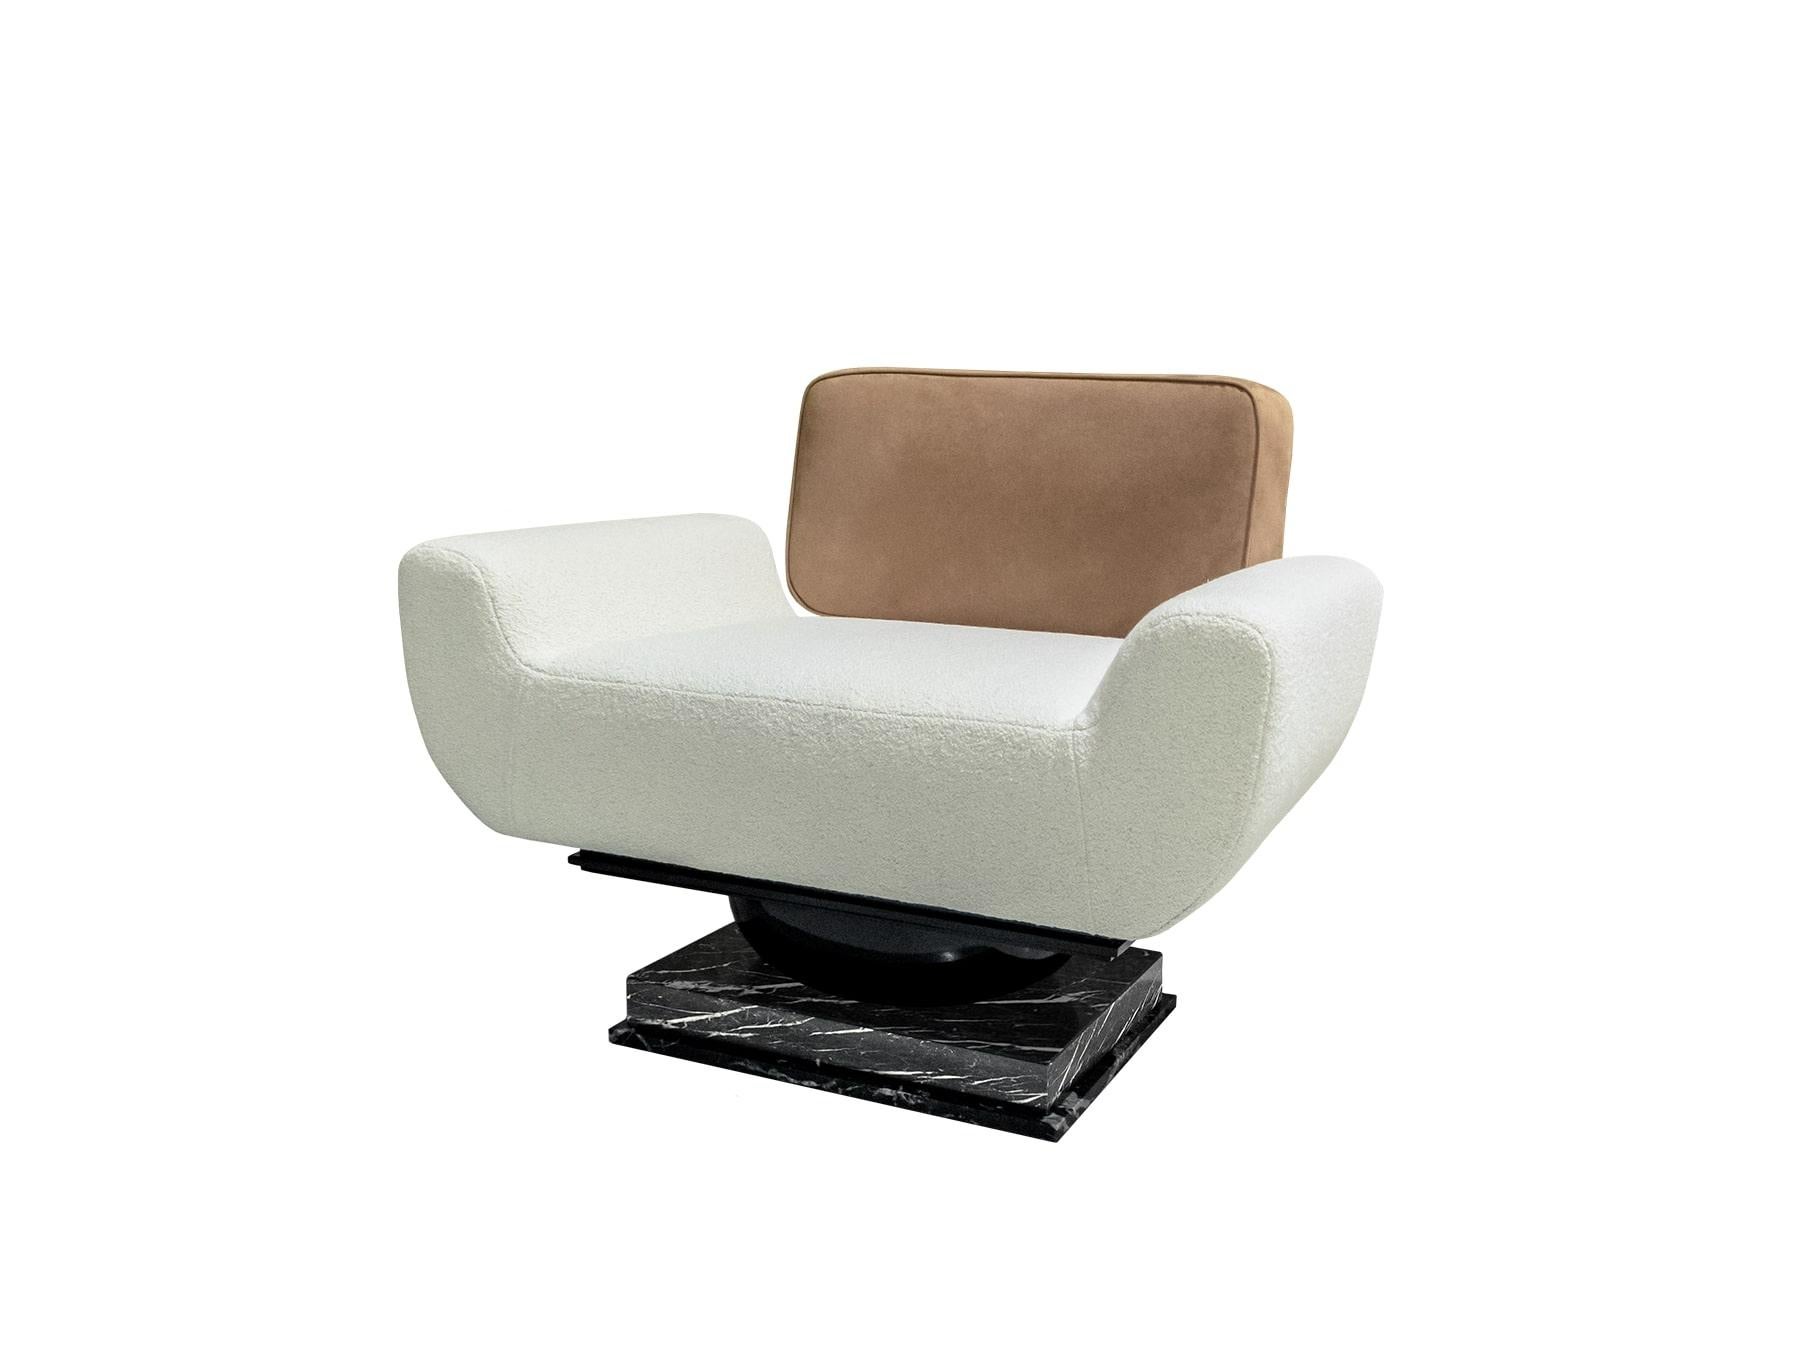 Moderner Sessel aus Bouclé, Leder gepolstert & Nero Marquina Marmor Alice Sessel
Der Sessel Alice ist ein luxuriöser Sessel, der aus erlesenen Materialien besteht. Dieser eklektische Sessel eignet sich perfekt für ein zeitgenössisches